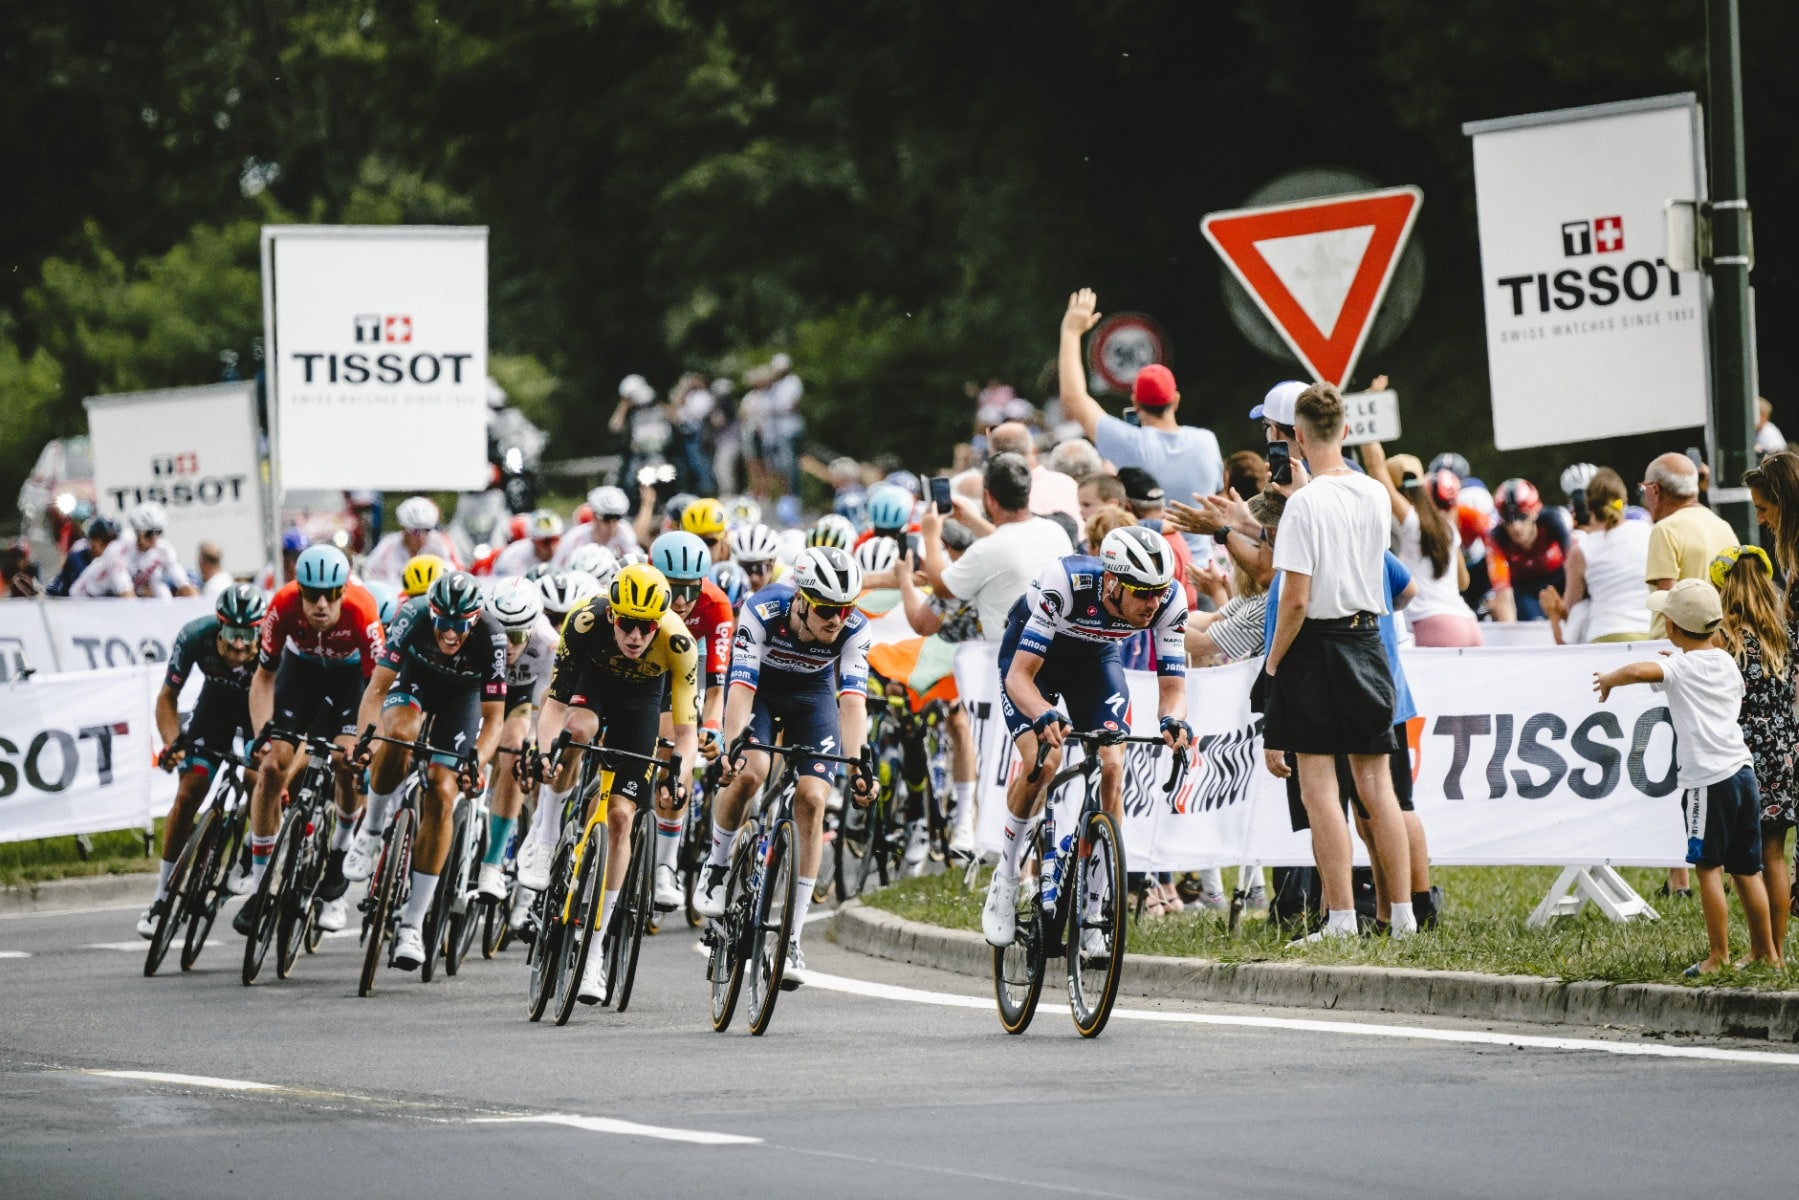 Tissot en de Tour de France: Viering van een nalatenschap van tijdmeting en innovatie